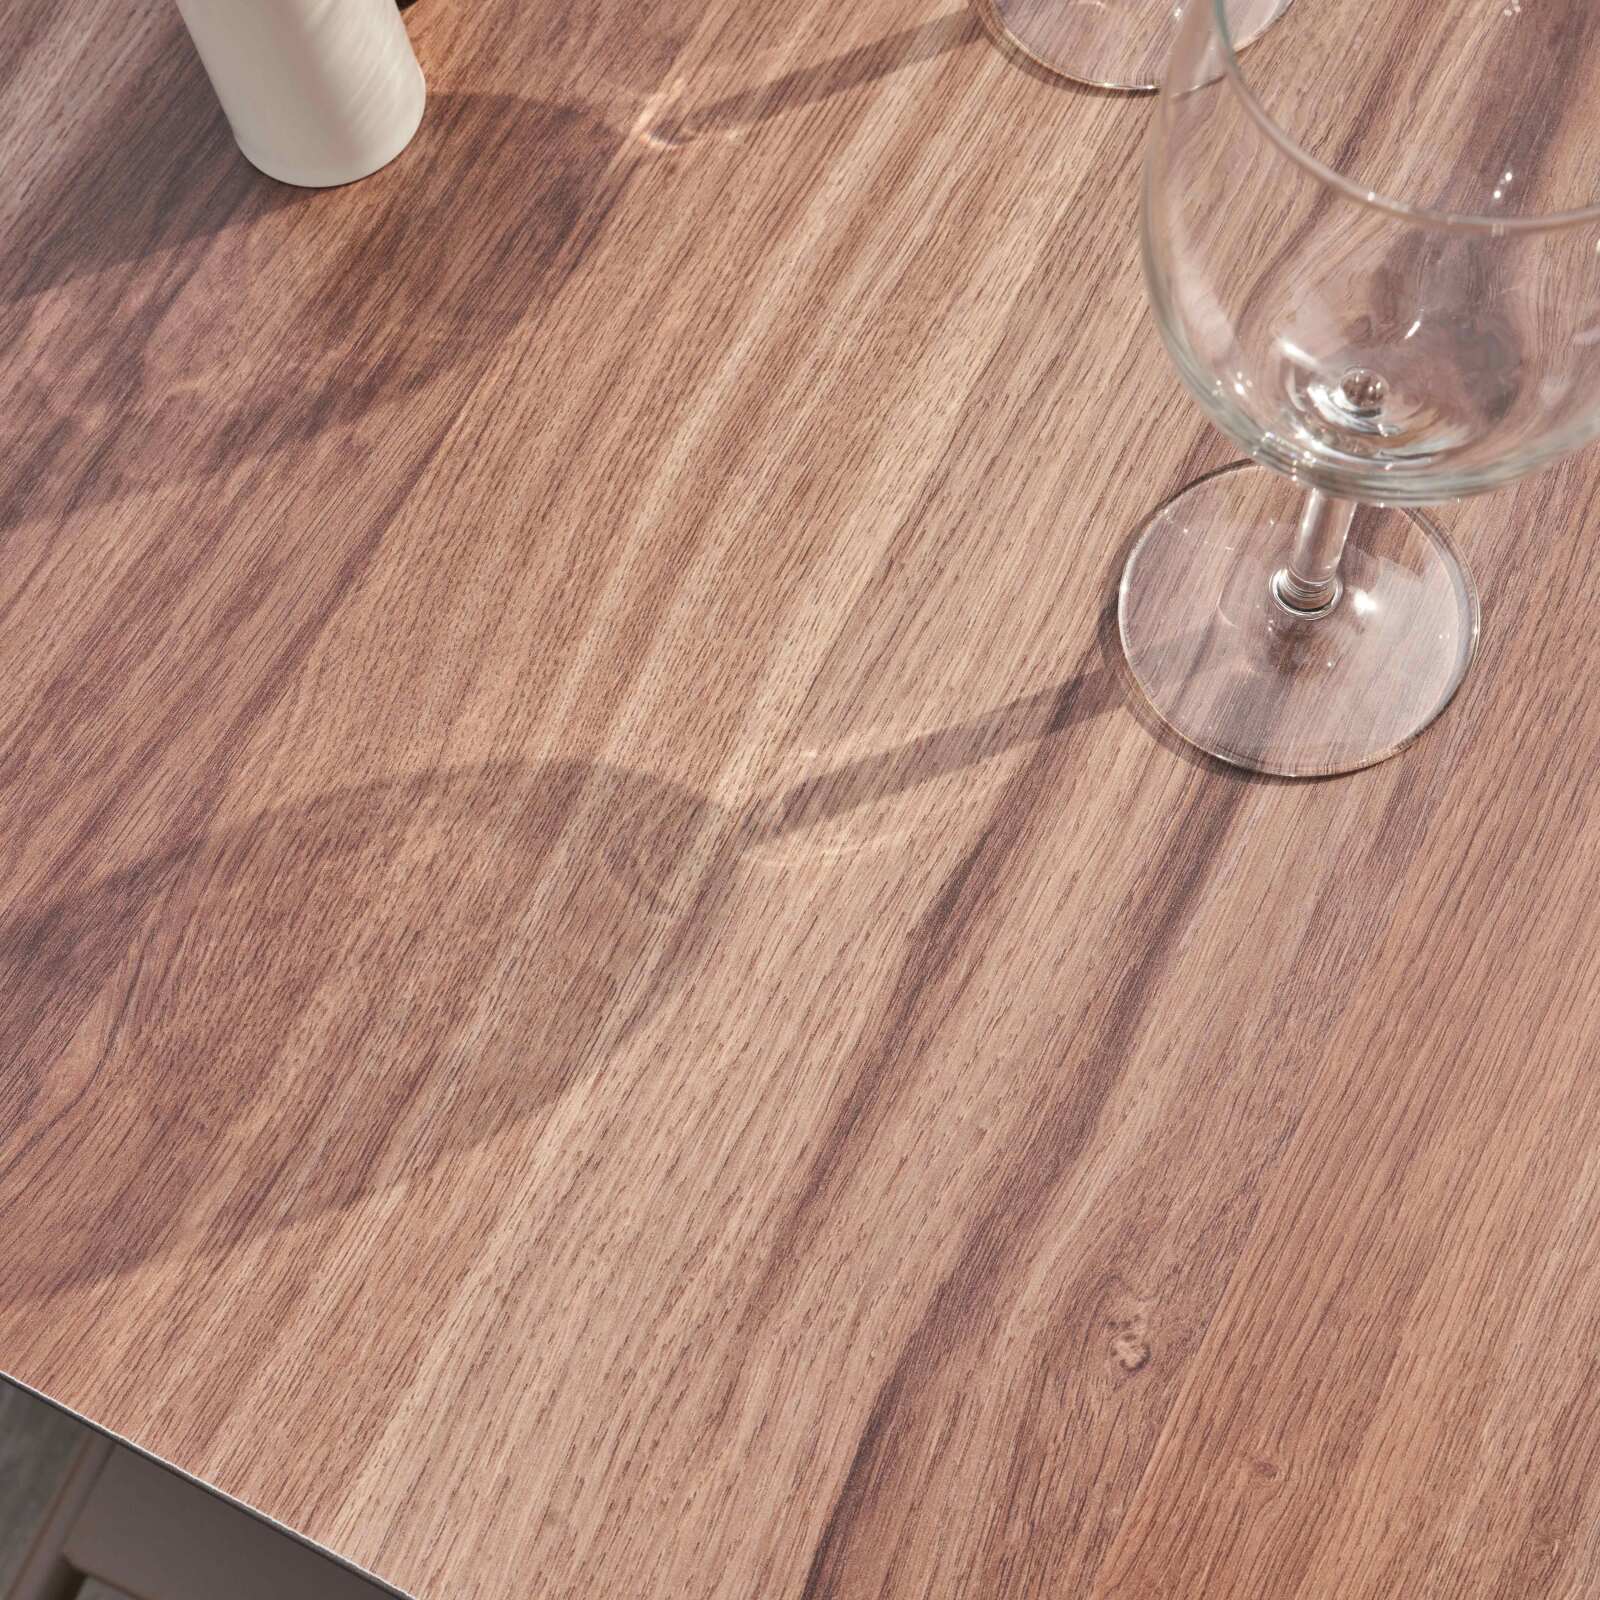 Table carrée pied blanc inclinable avec plateau chêne naturel 60 x